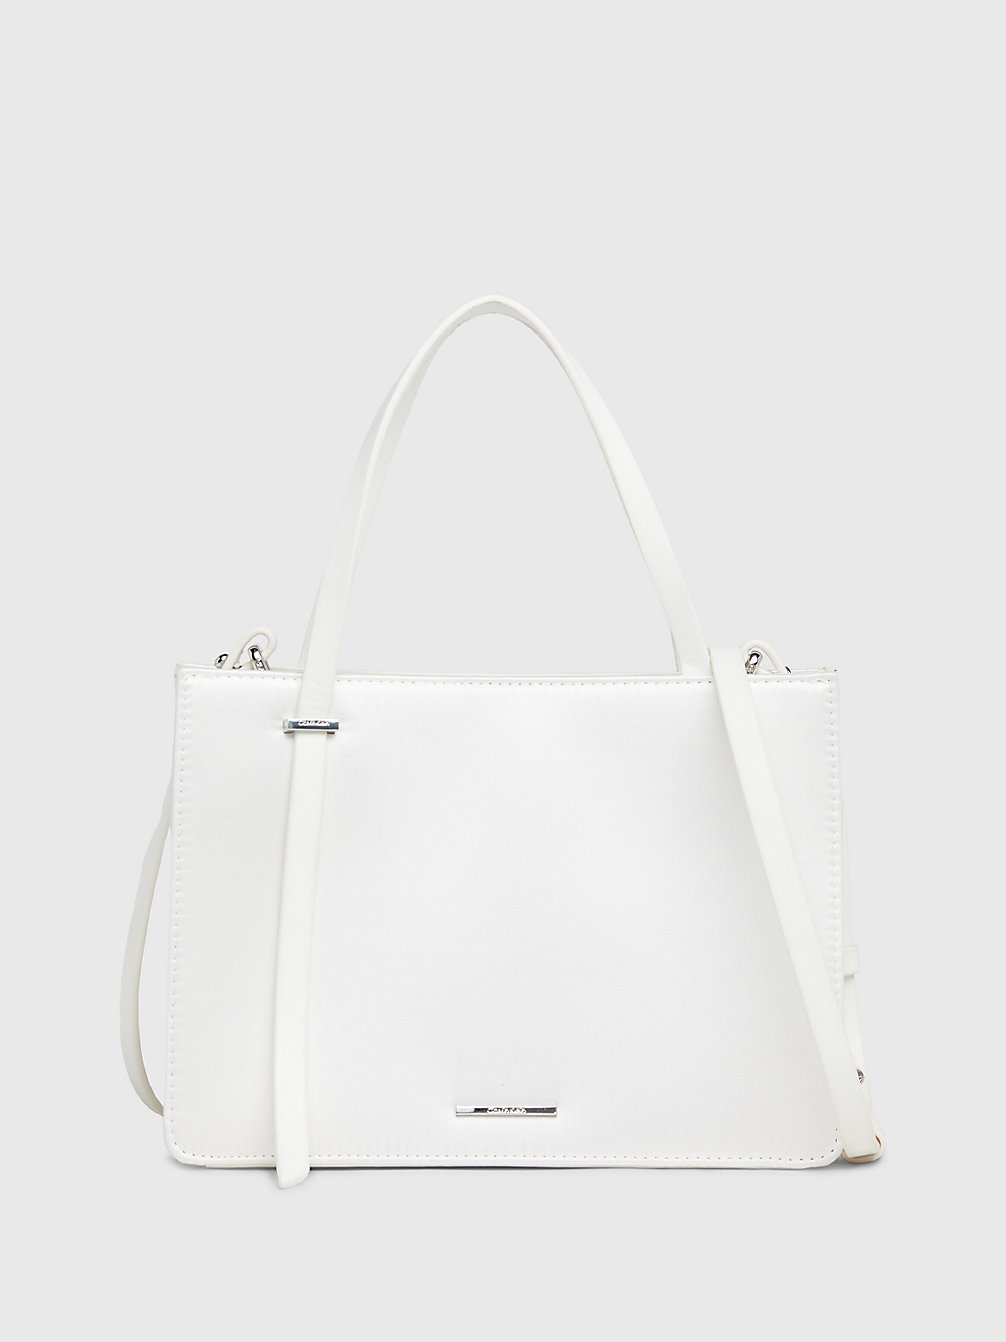 BRIGHT WHITE Satin Handbag undefined Women Calvin Klein